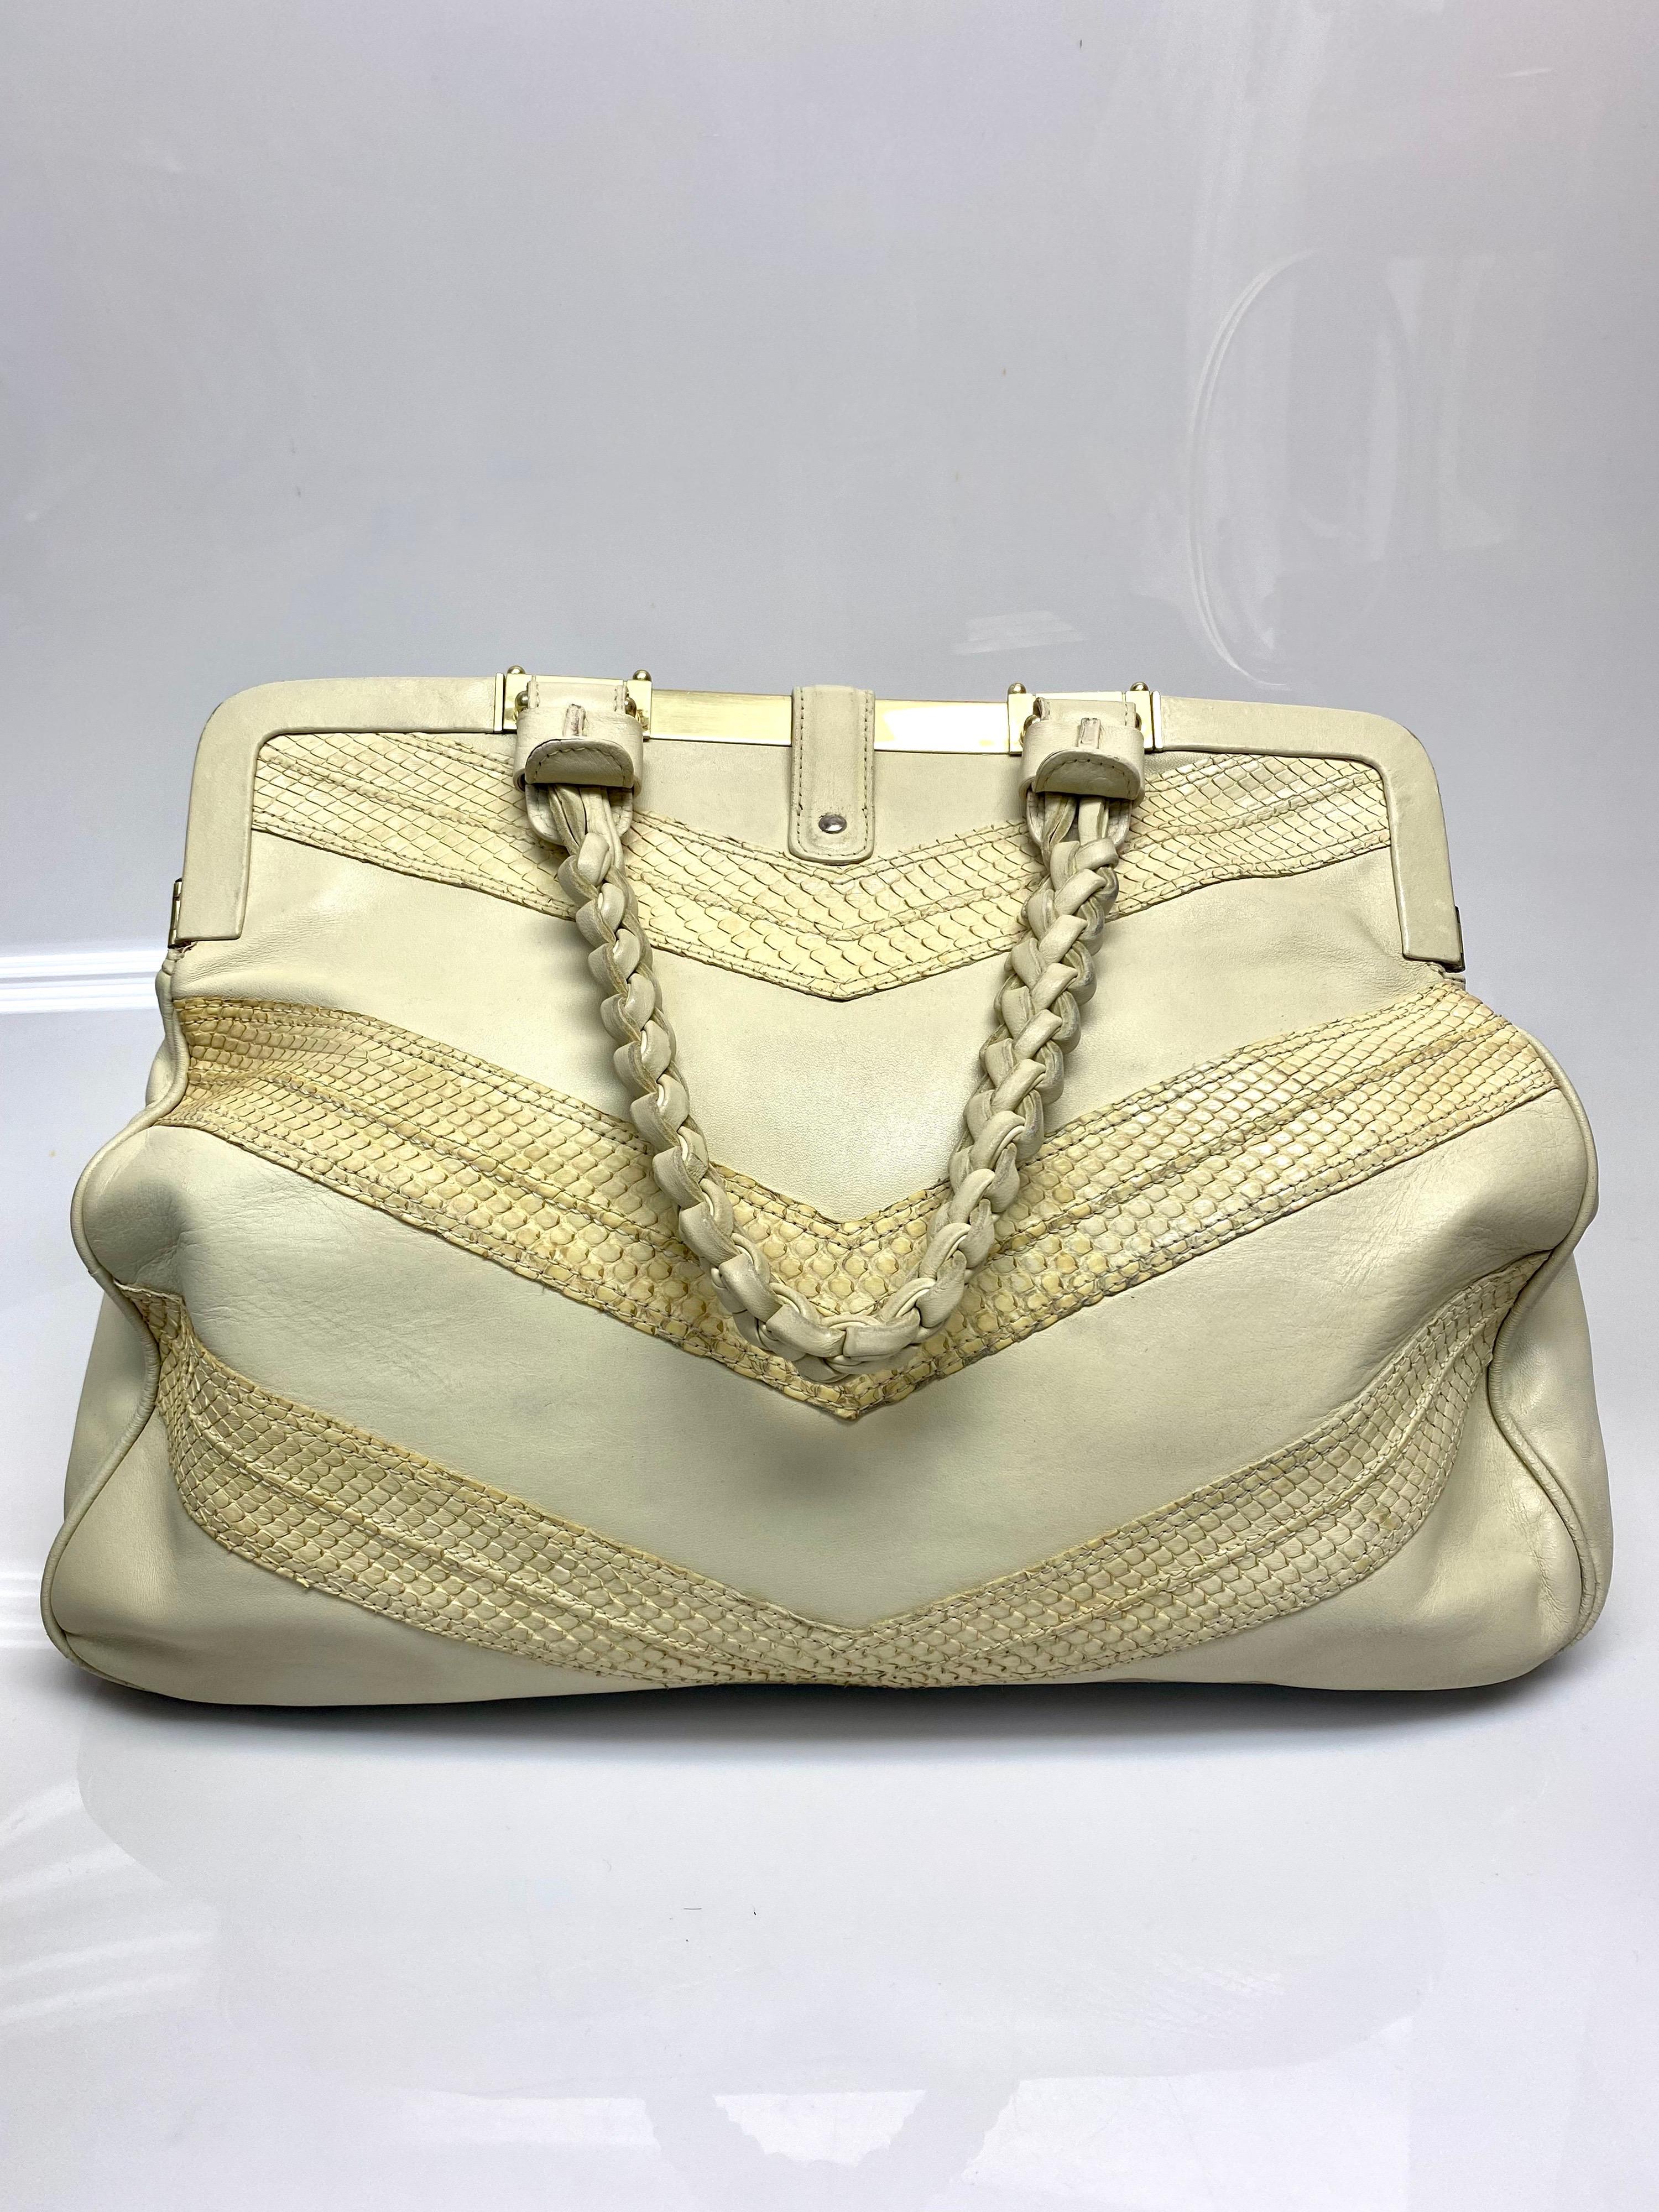 Marc Jacobs Beige Python Leather Handbag For Sale 1